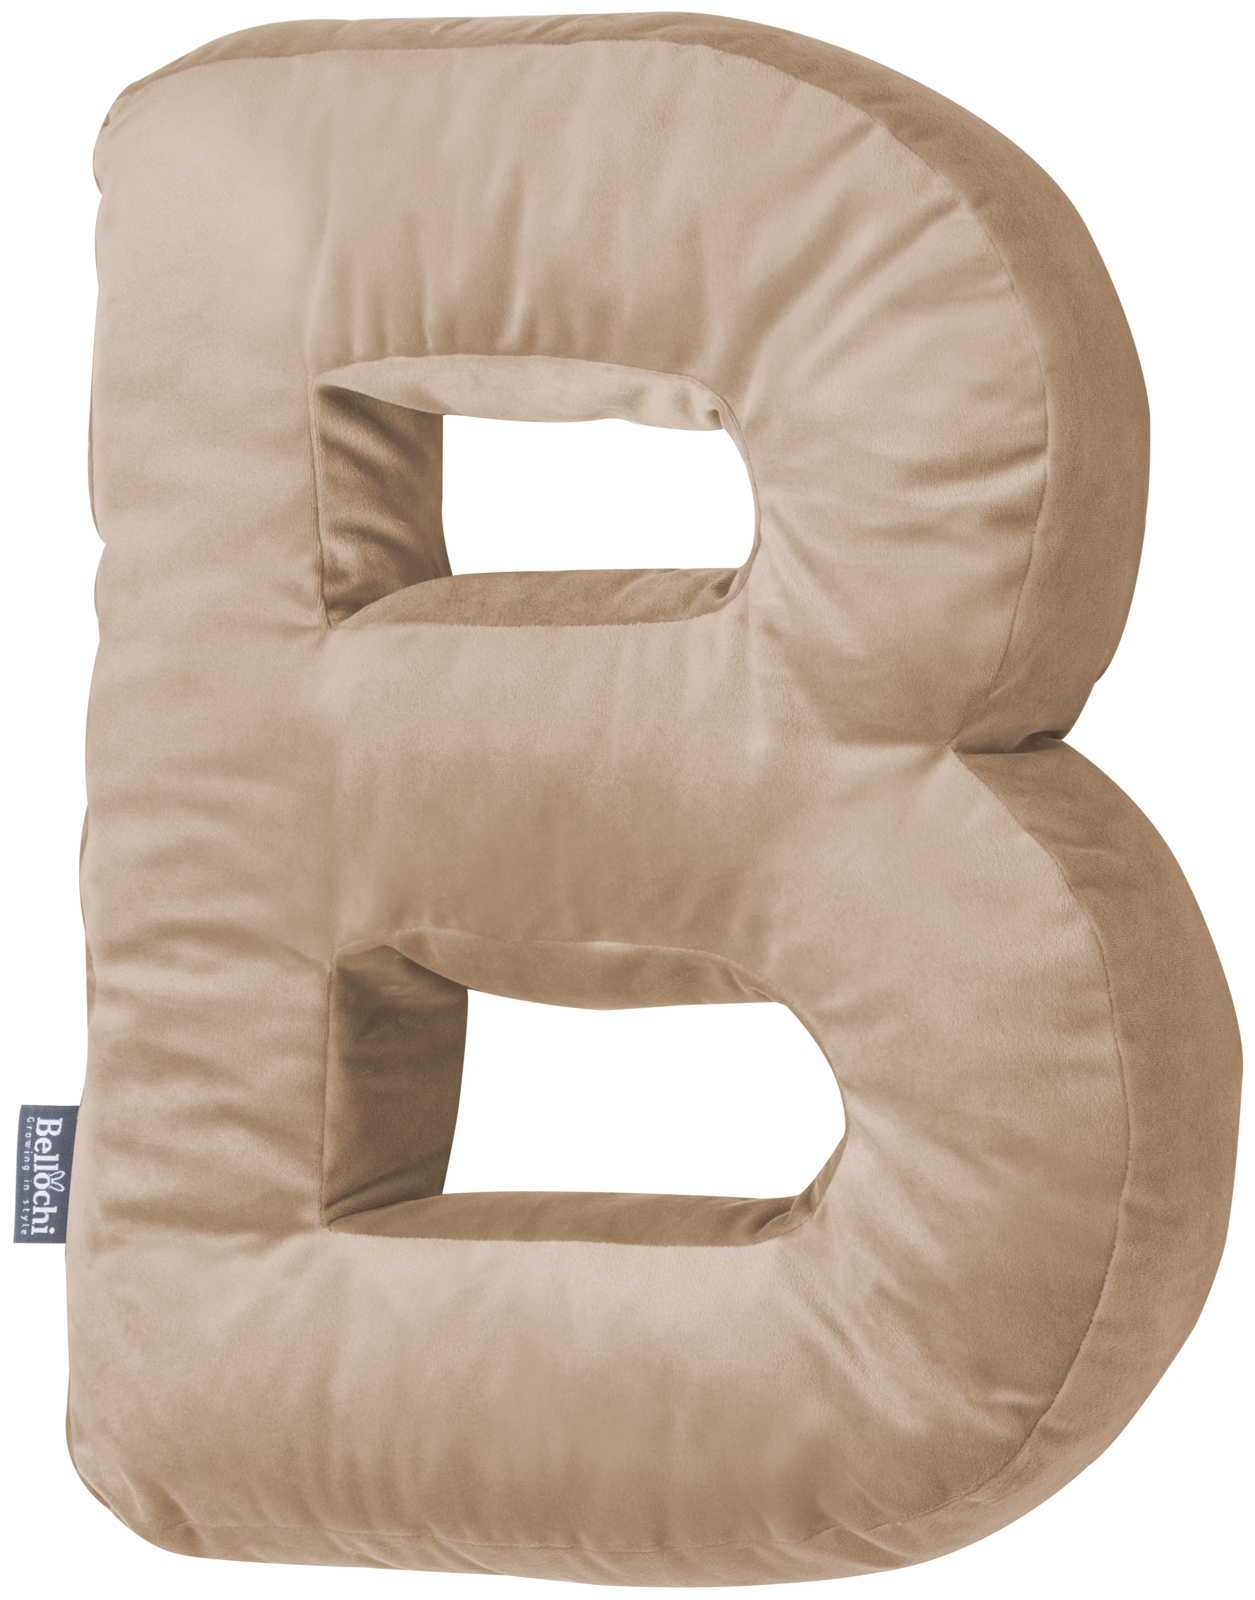 Decorative velvet letter pillow B shaped beige